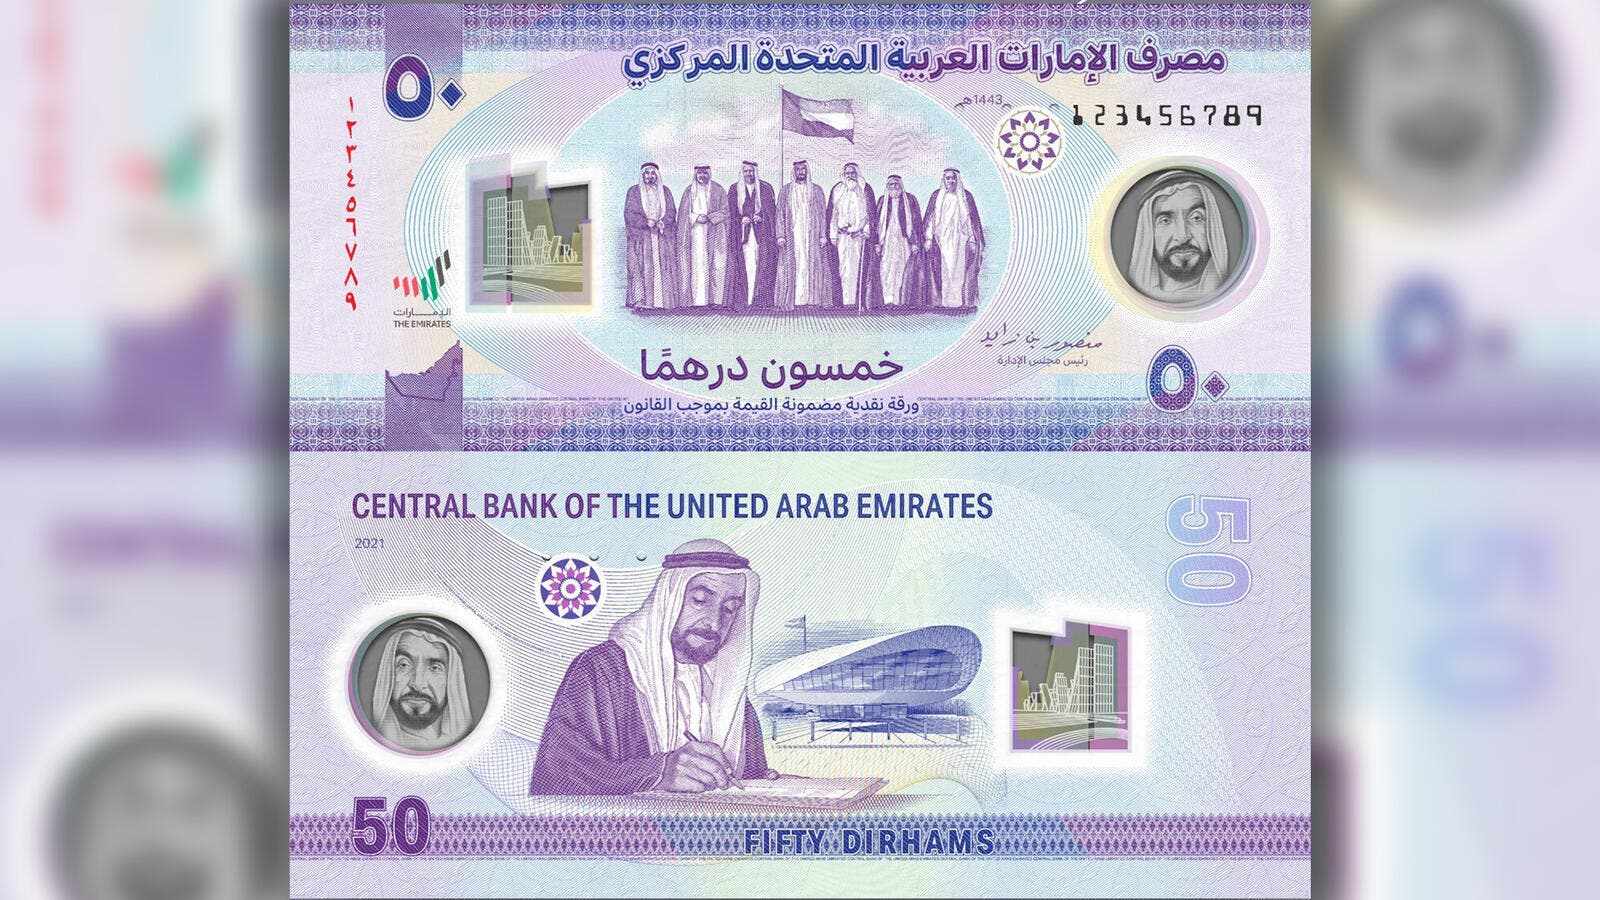 8 дирхам. Новые дирхамы ОАЭ. Валюта Эмиратов. UAE dirhams 50. Юбилейные 50 дирхам ОАЭ.